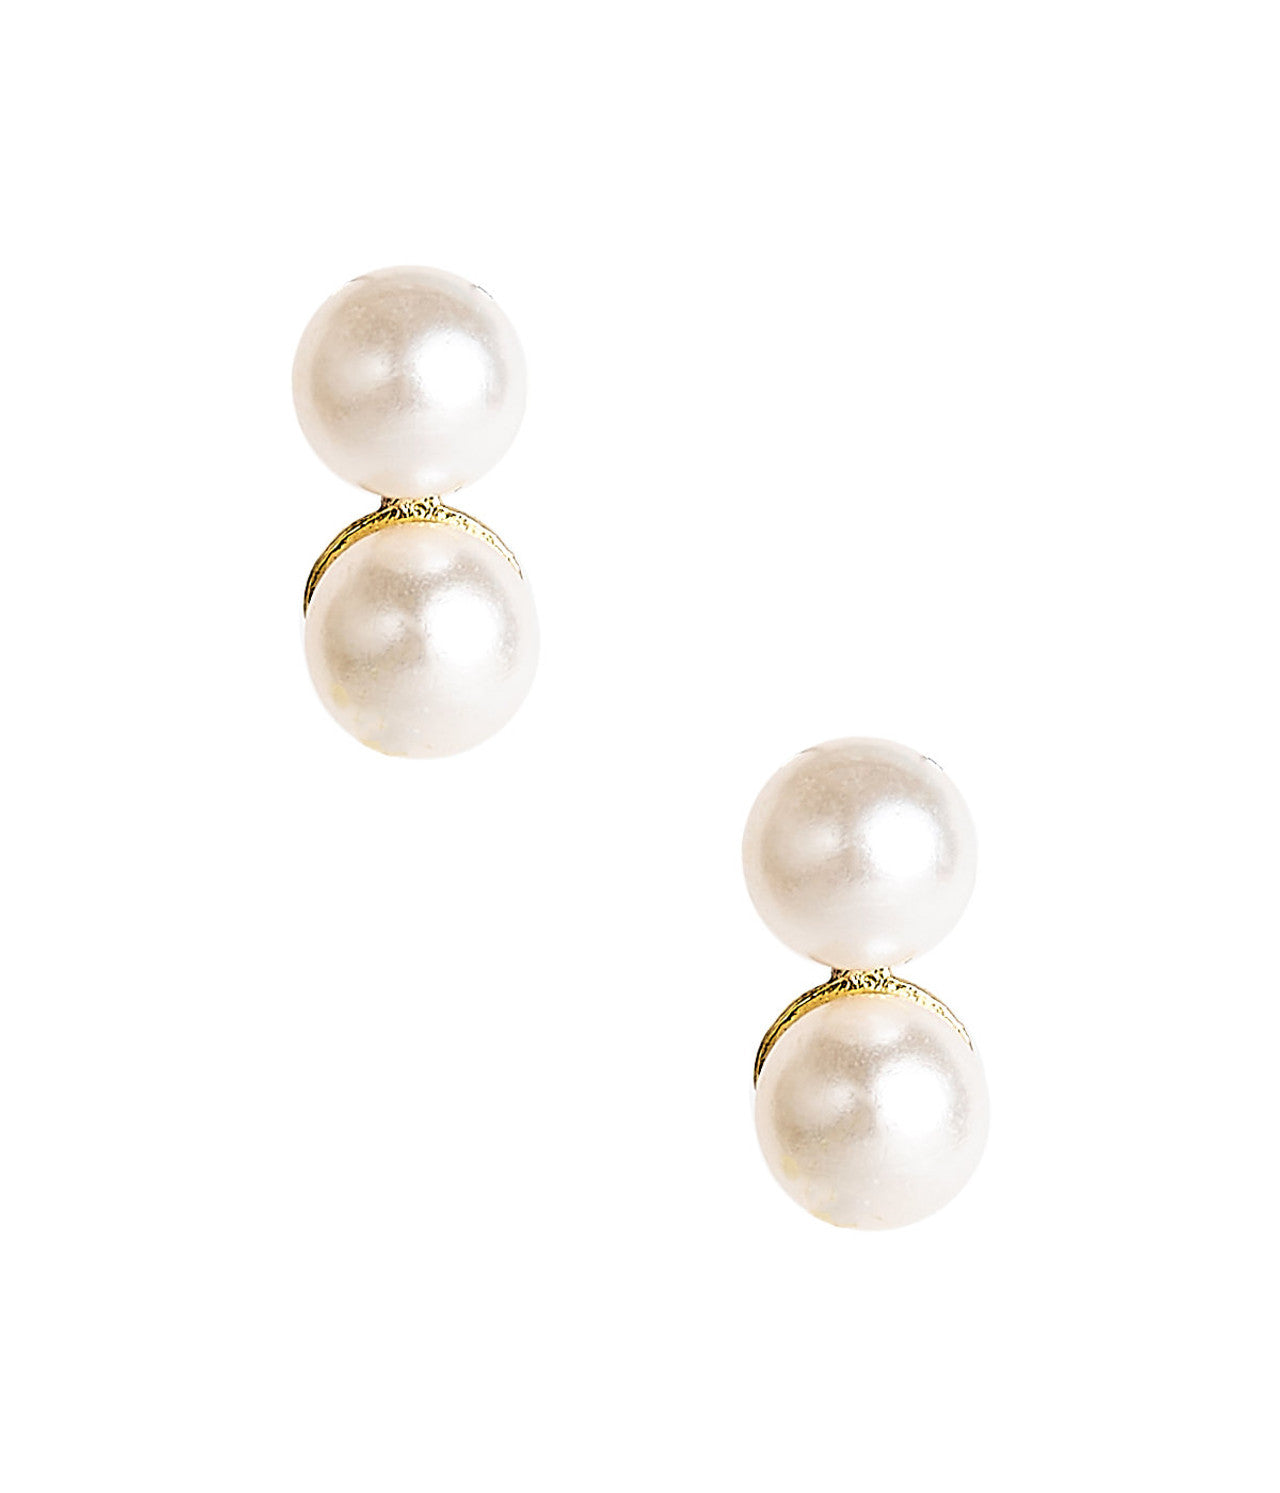 Belle Double Pearl Stud Earrings